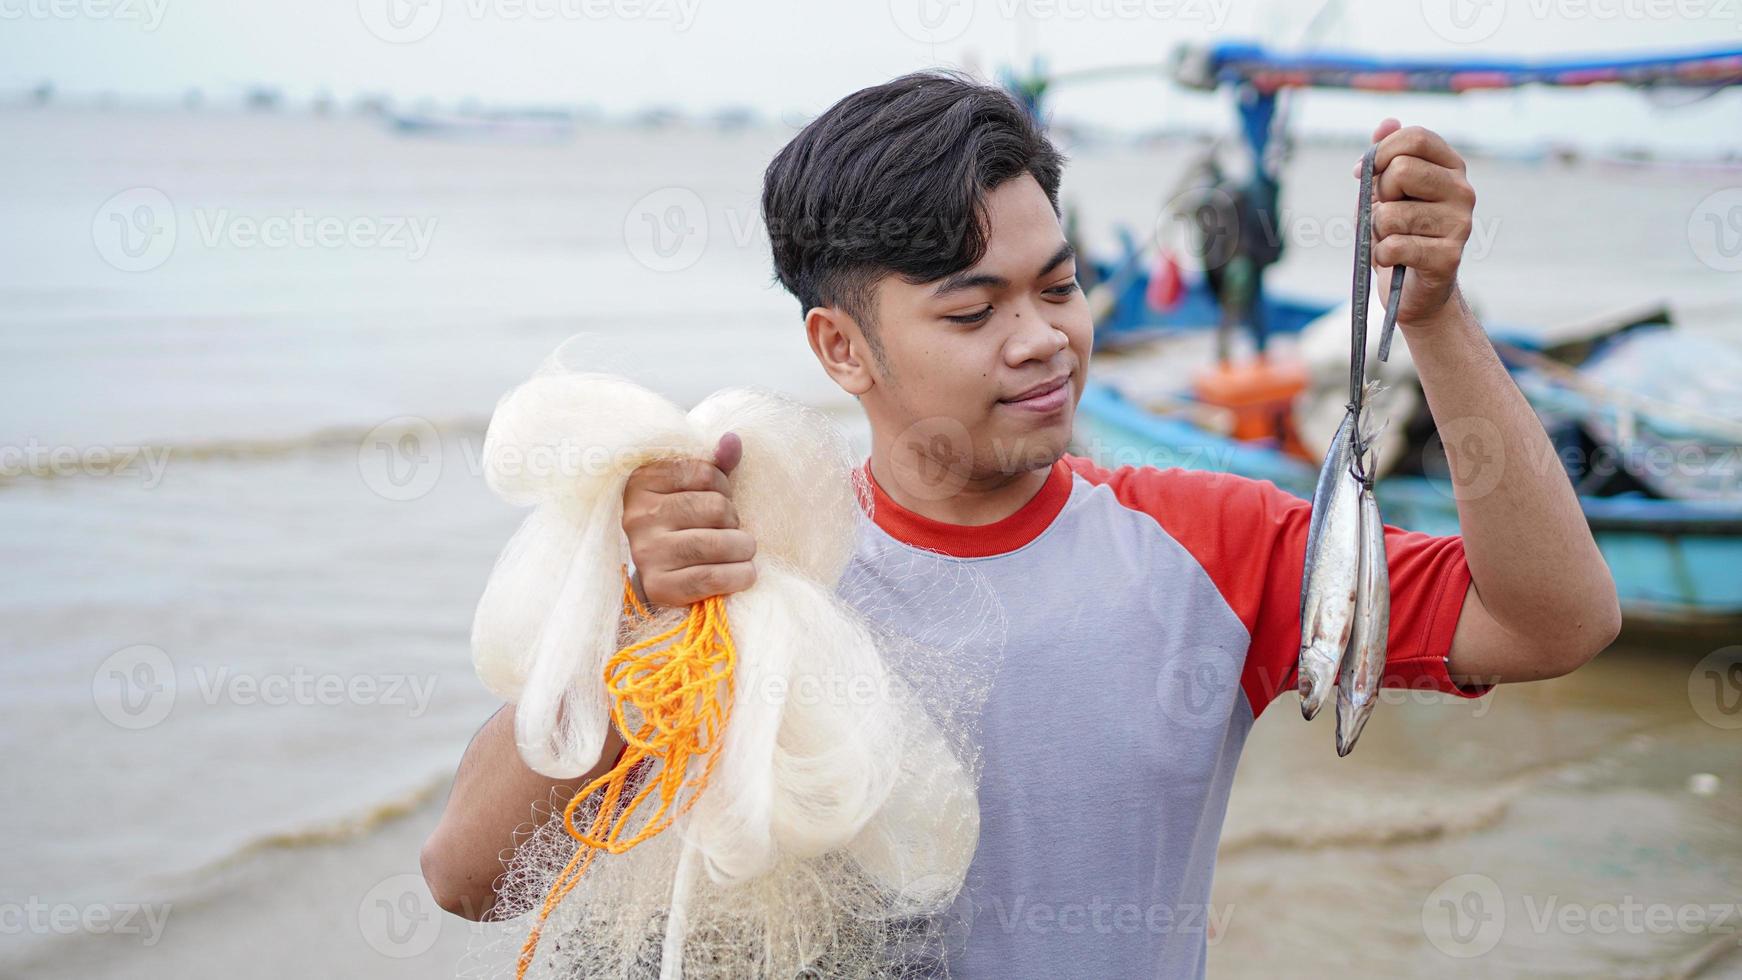 feliz jovem pescador na praia segurando seu peixe e mostra na frente de seu barco foto